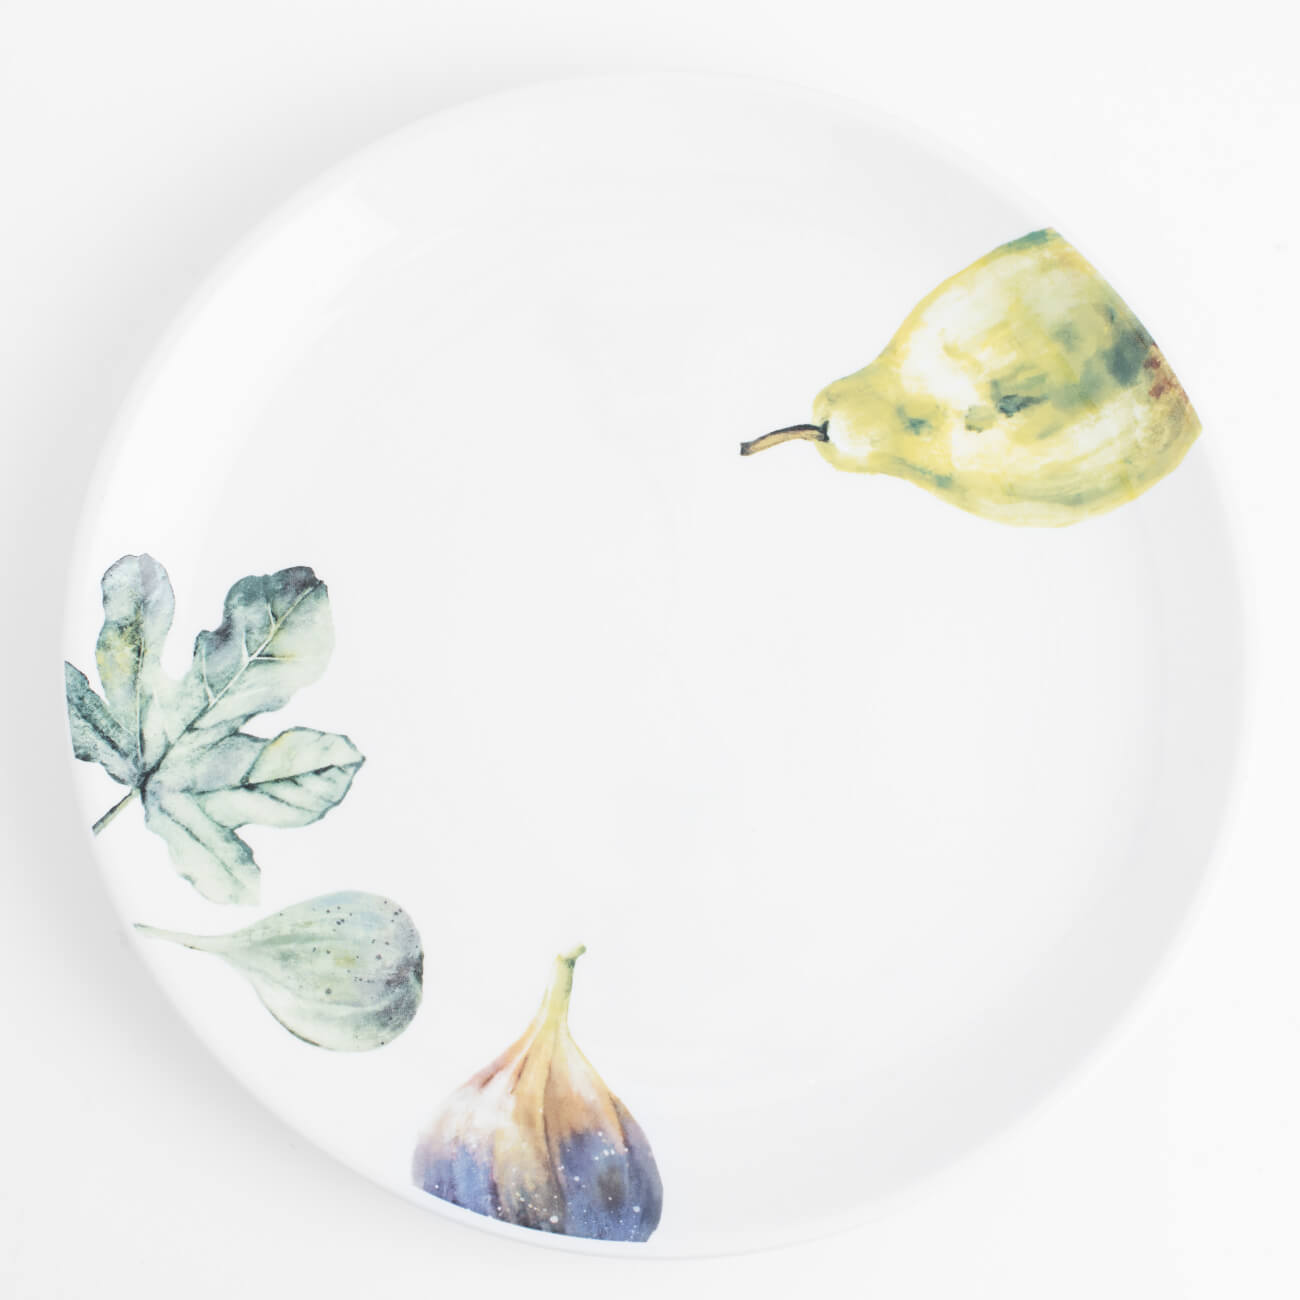 Тарелка обеденная, 26 см, керамика, белая, Инжир и груша, Fruit garden изображение № 1